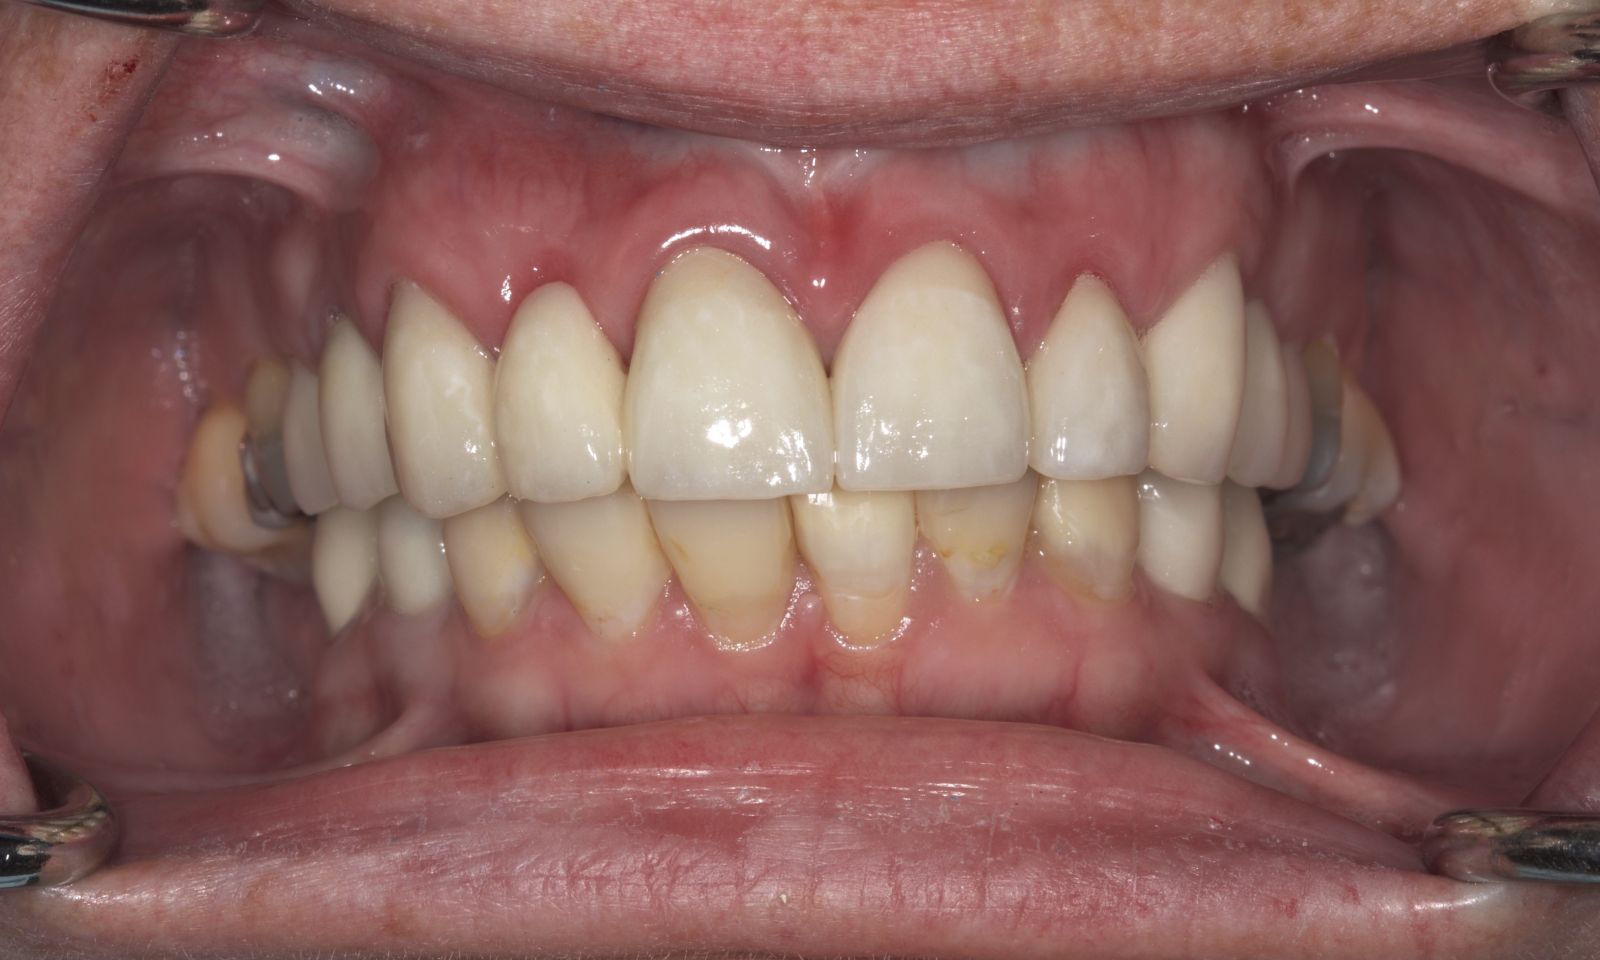 Dental Crowns - After